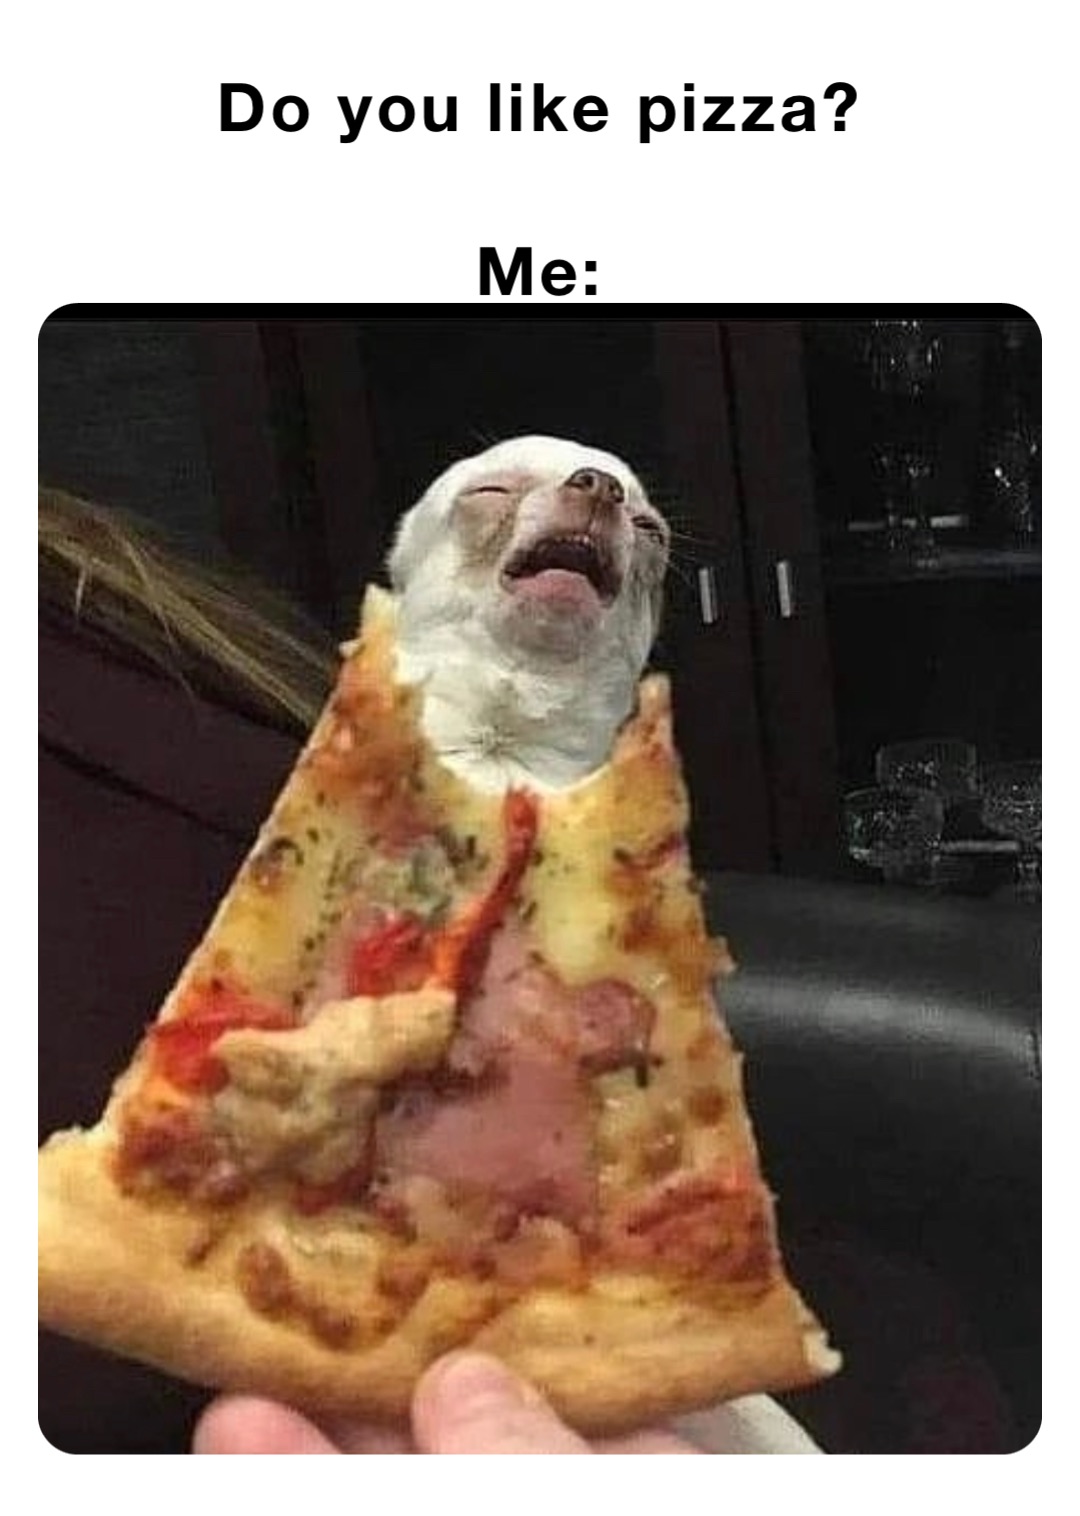 Do you like pizza?

Me: